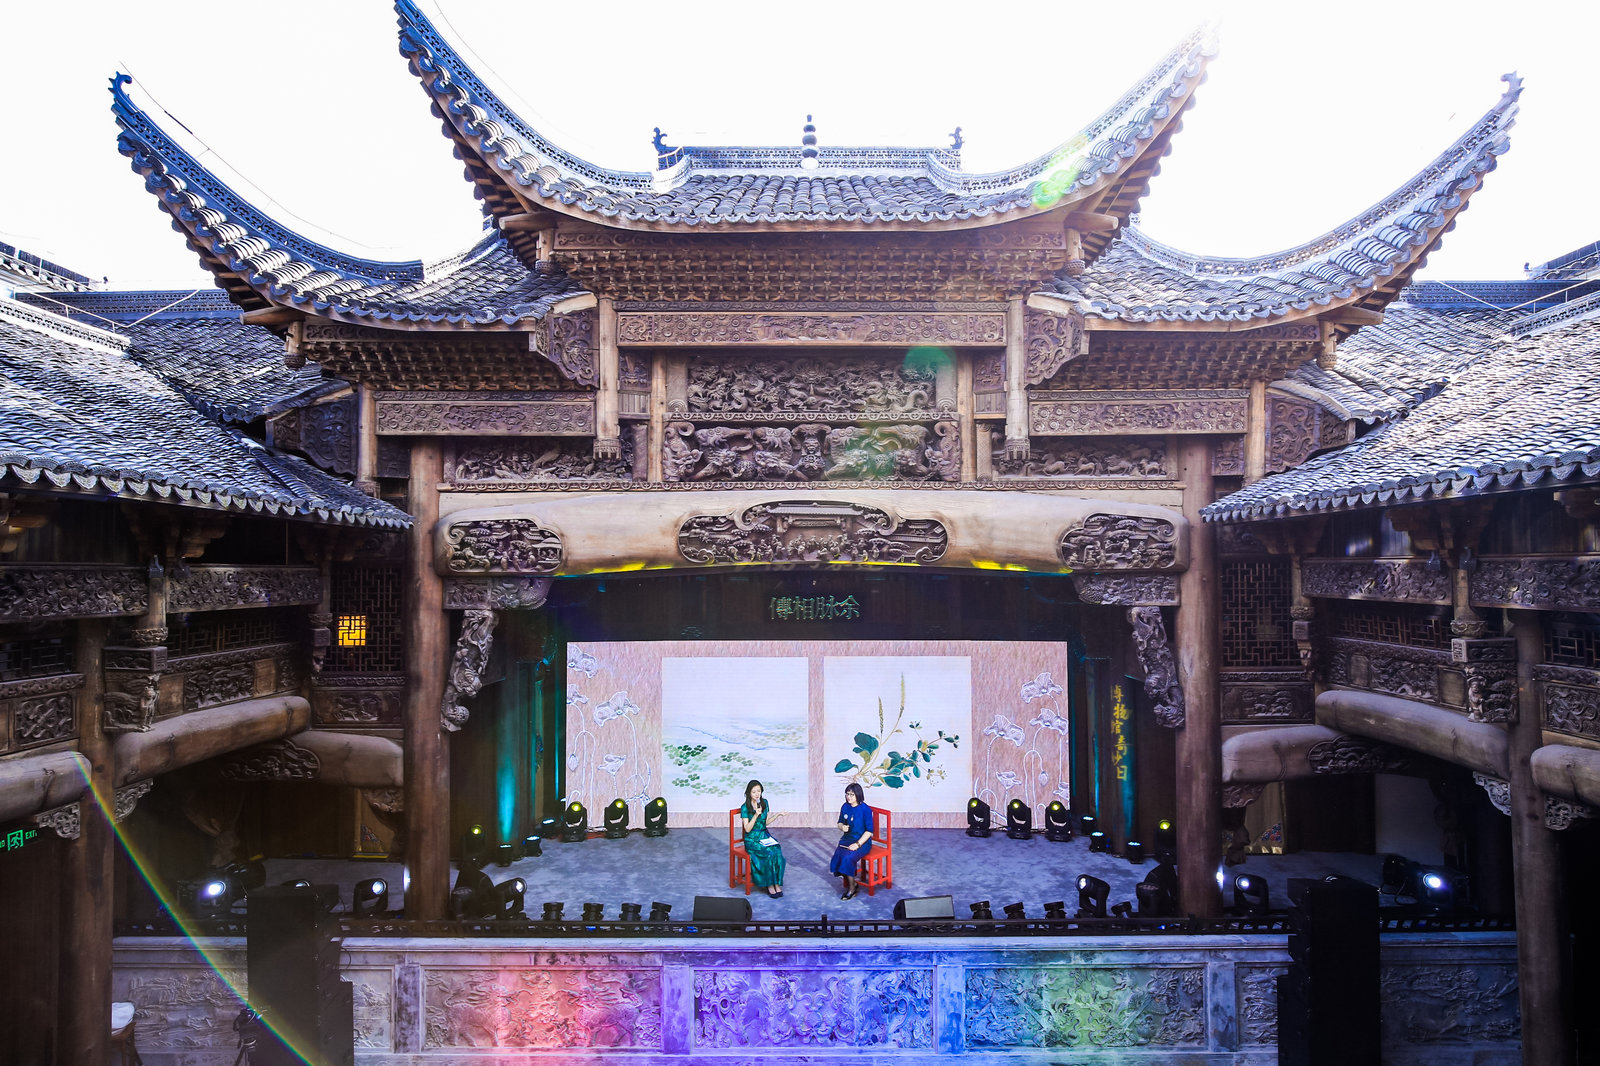 在上海宝山的隐秘古戏台王珮瑜想起童年苏州山塘街的石子路